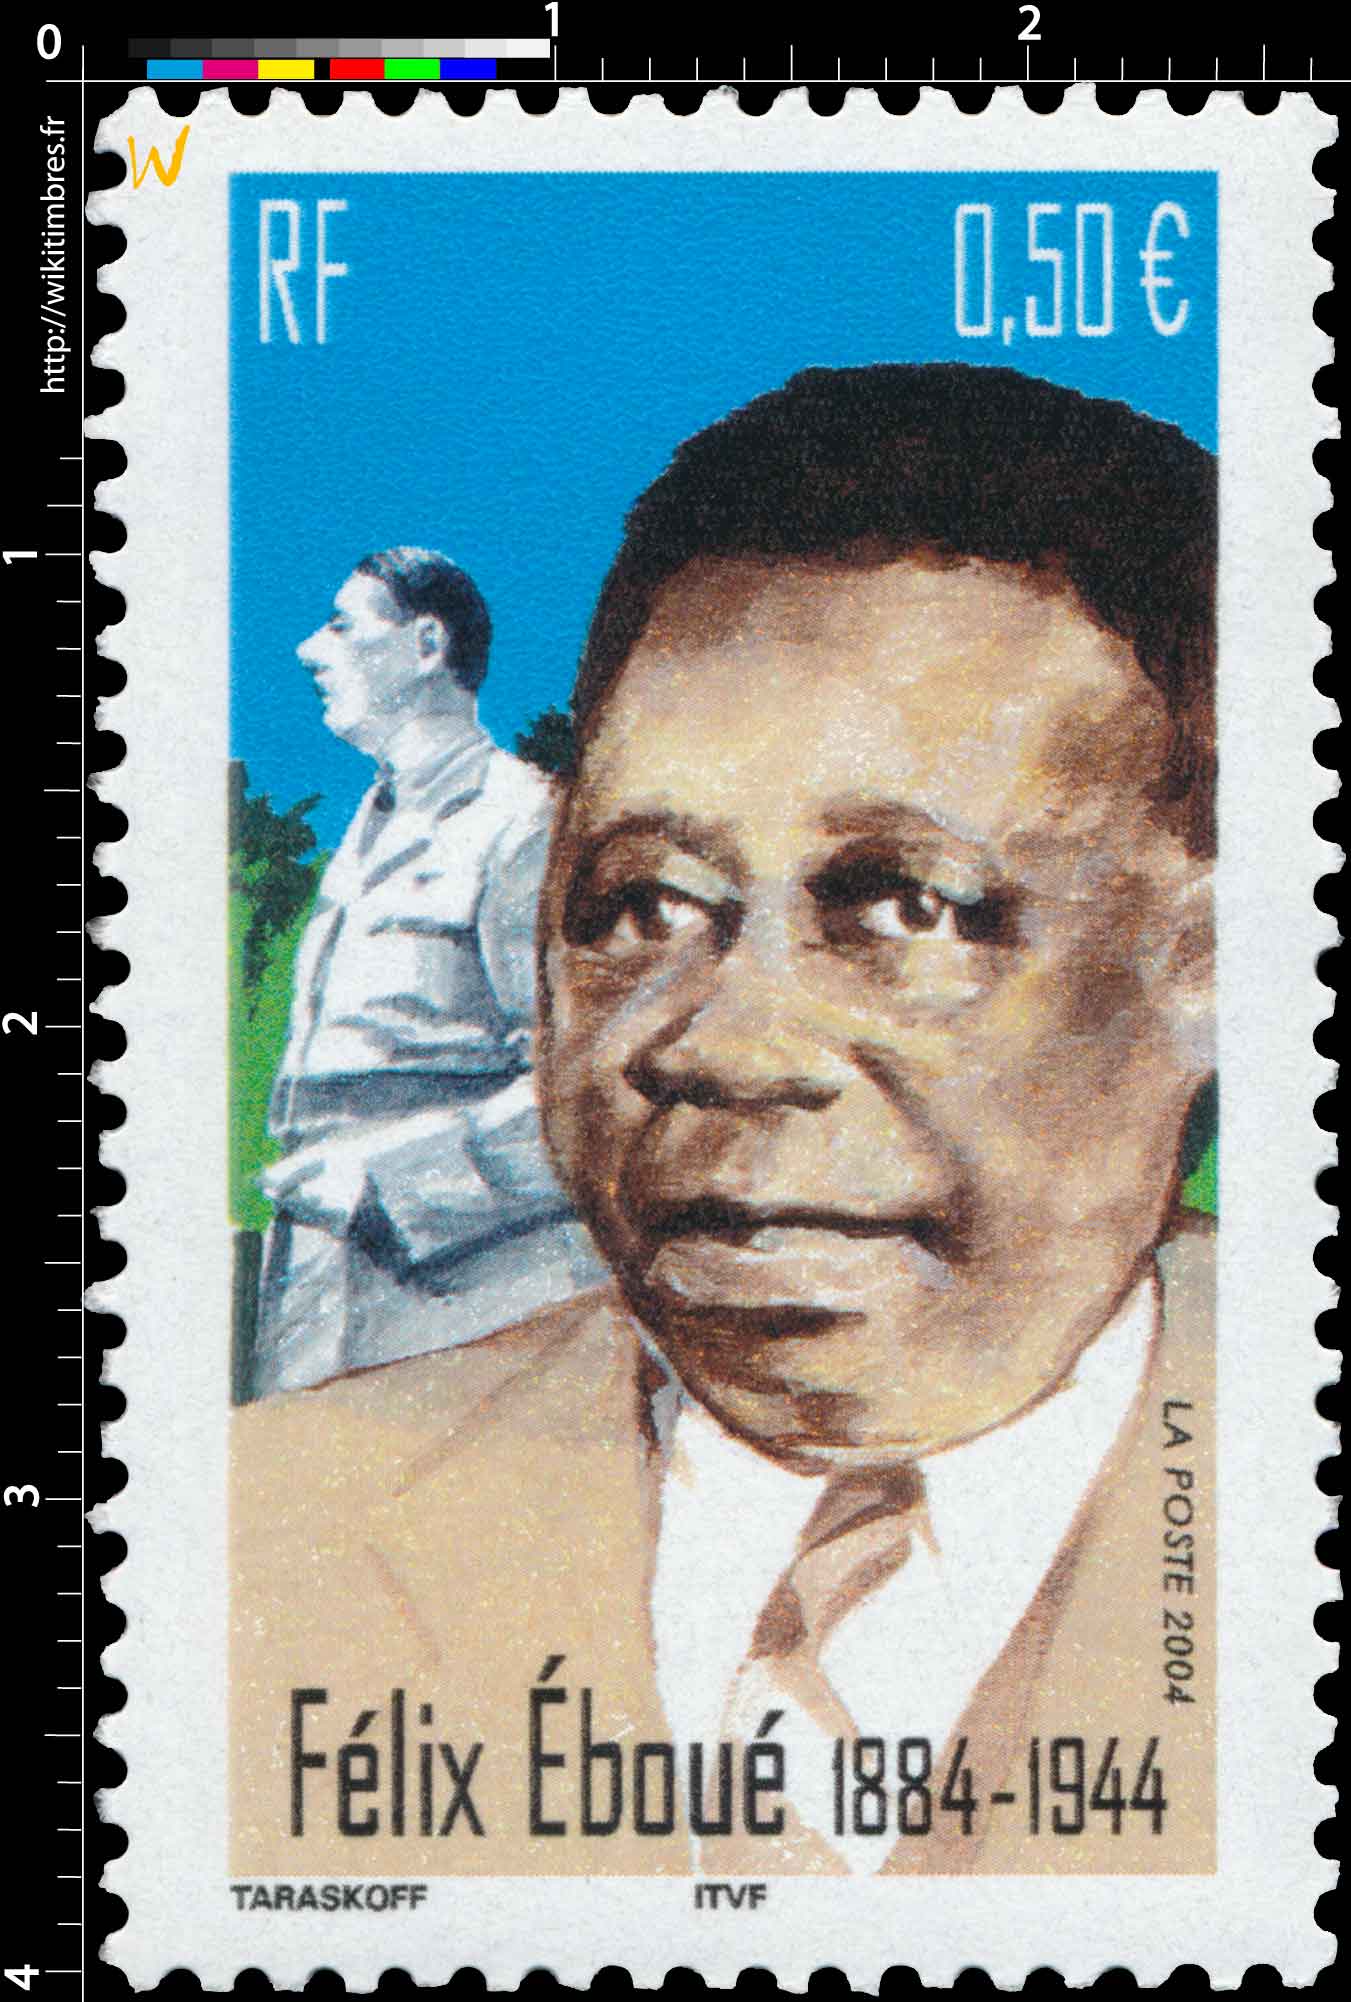 2004 Félix Éboué 1884-1944